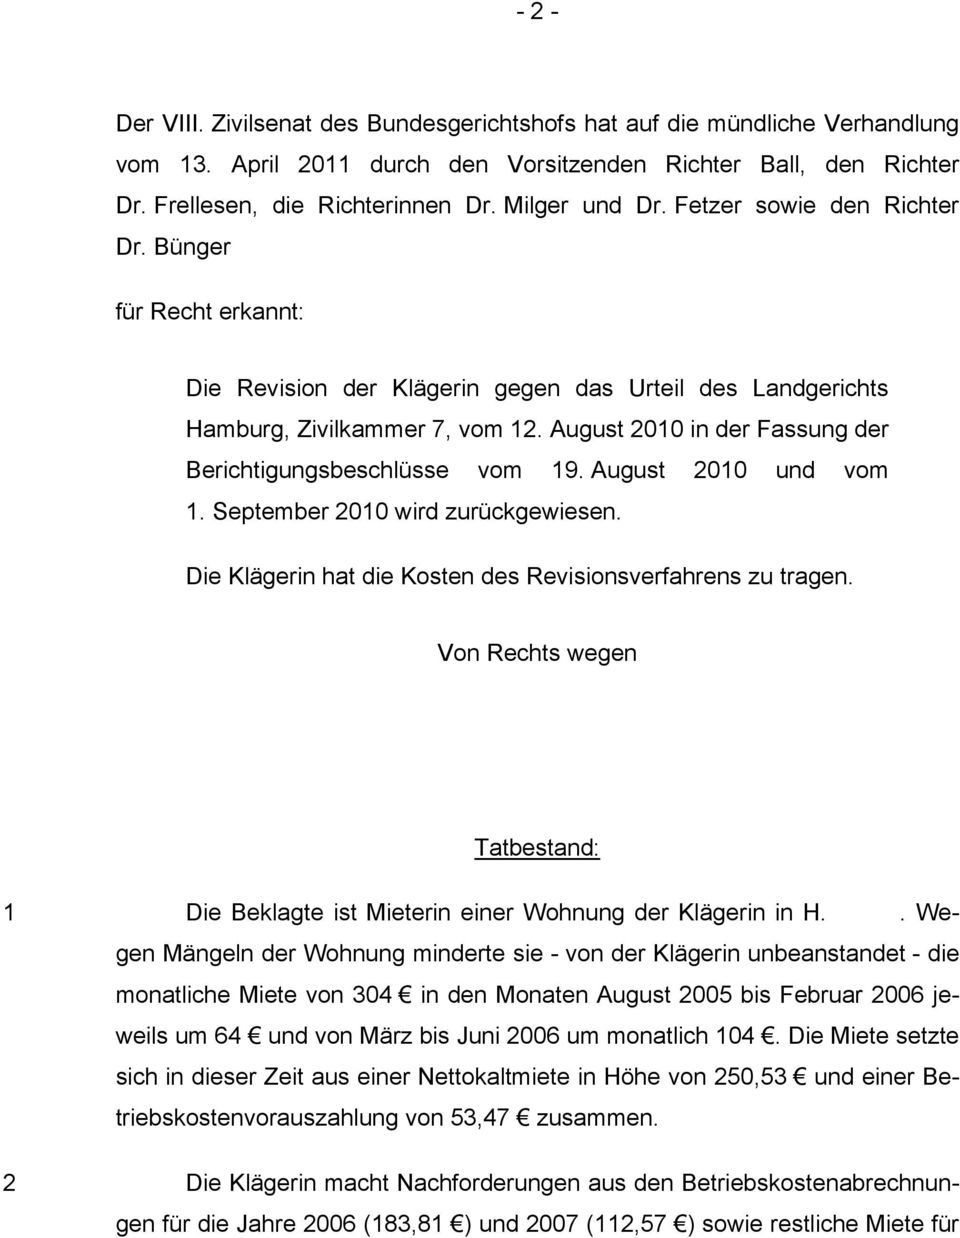 August 2010 in der Fassung der Berichtigungsbeschlüsse vom 19. August 2010 und vom 1. September 2010 wird zurückgewiesen. Die Klägerin hat die Kosten des Revisionsverfahrens zu tragen.